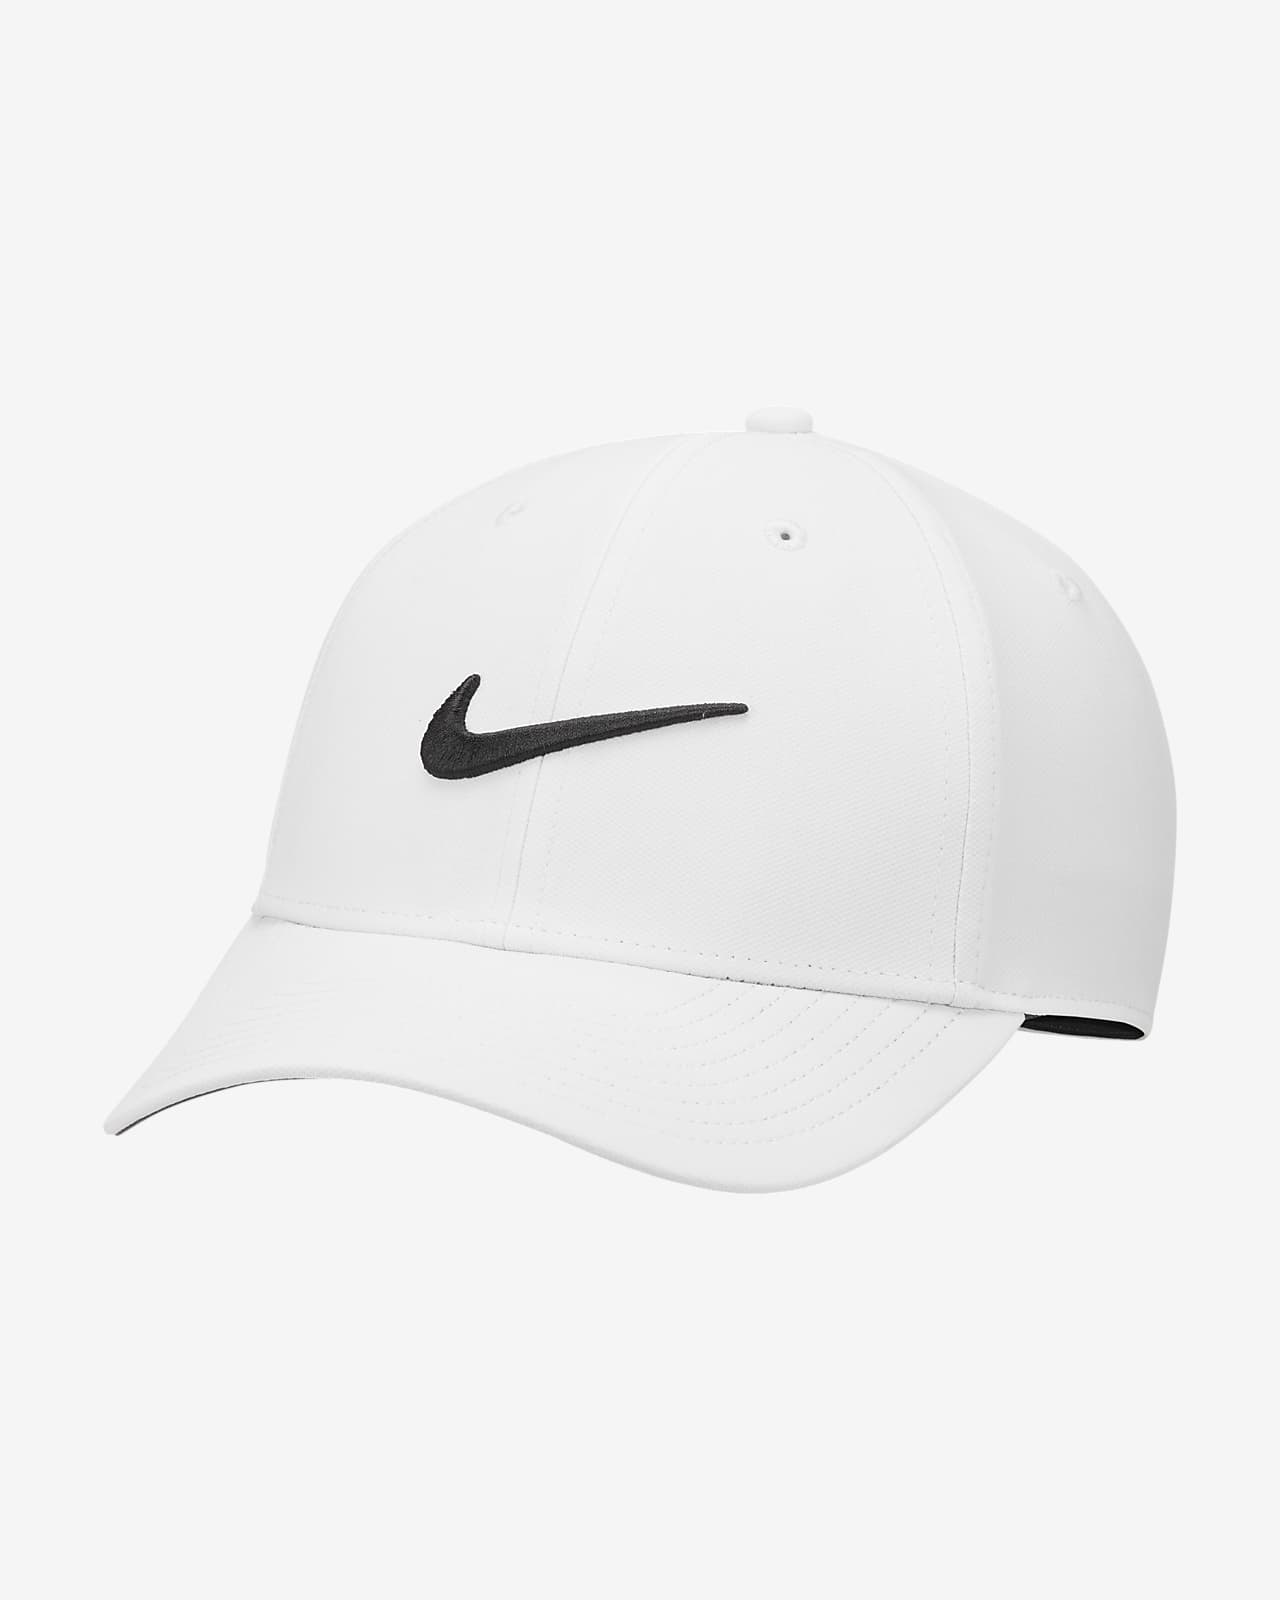 Σταθερό καπέλο jockey με σχέδιο Swoosh Nike Dri-FIT Club